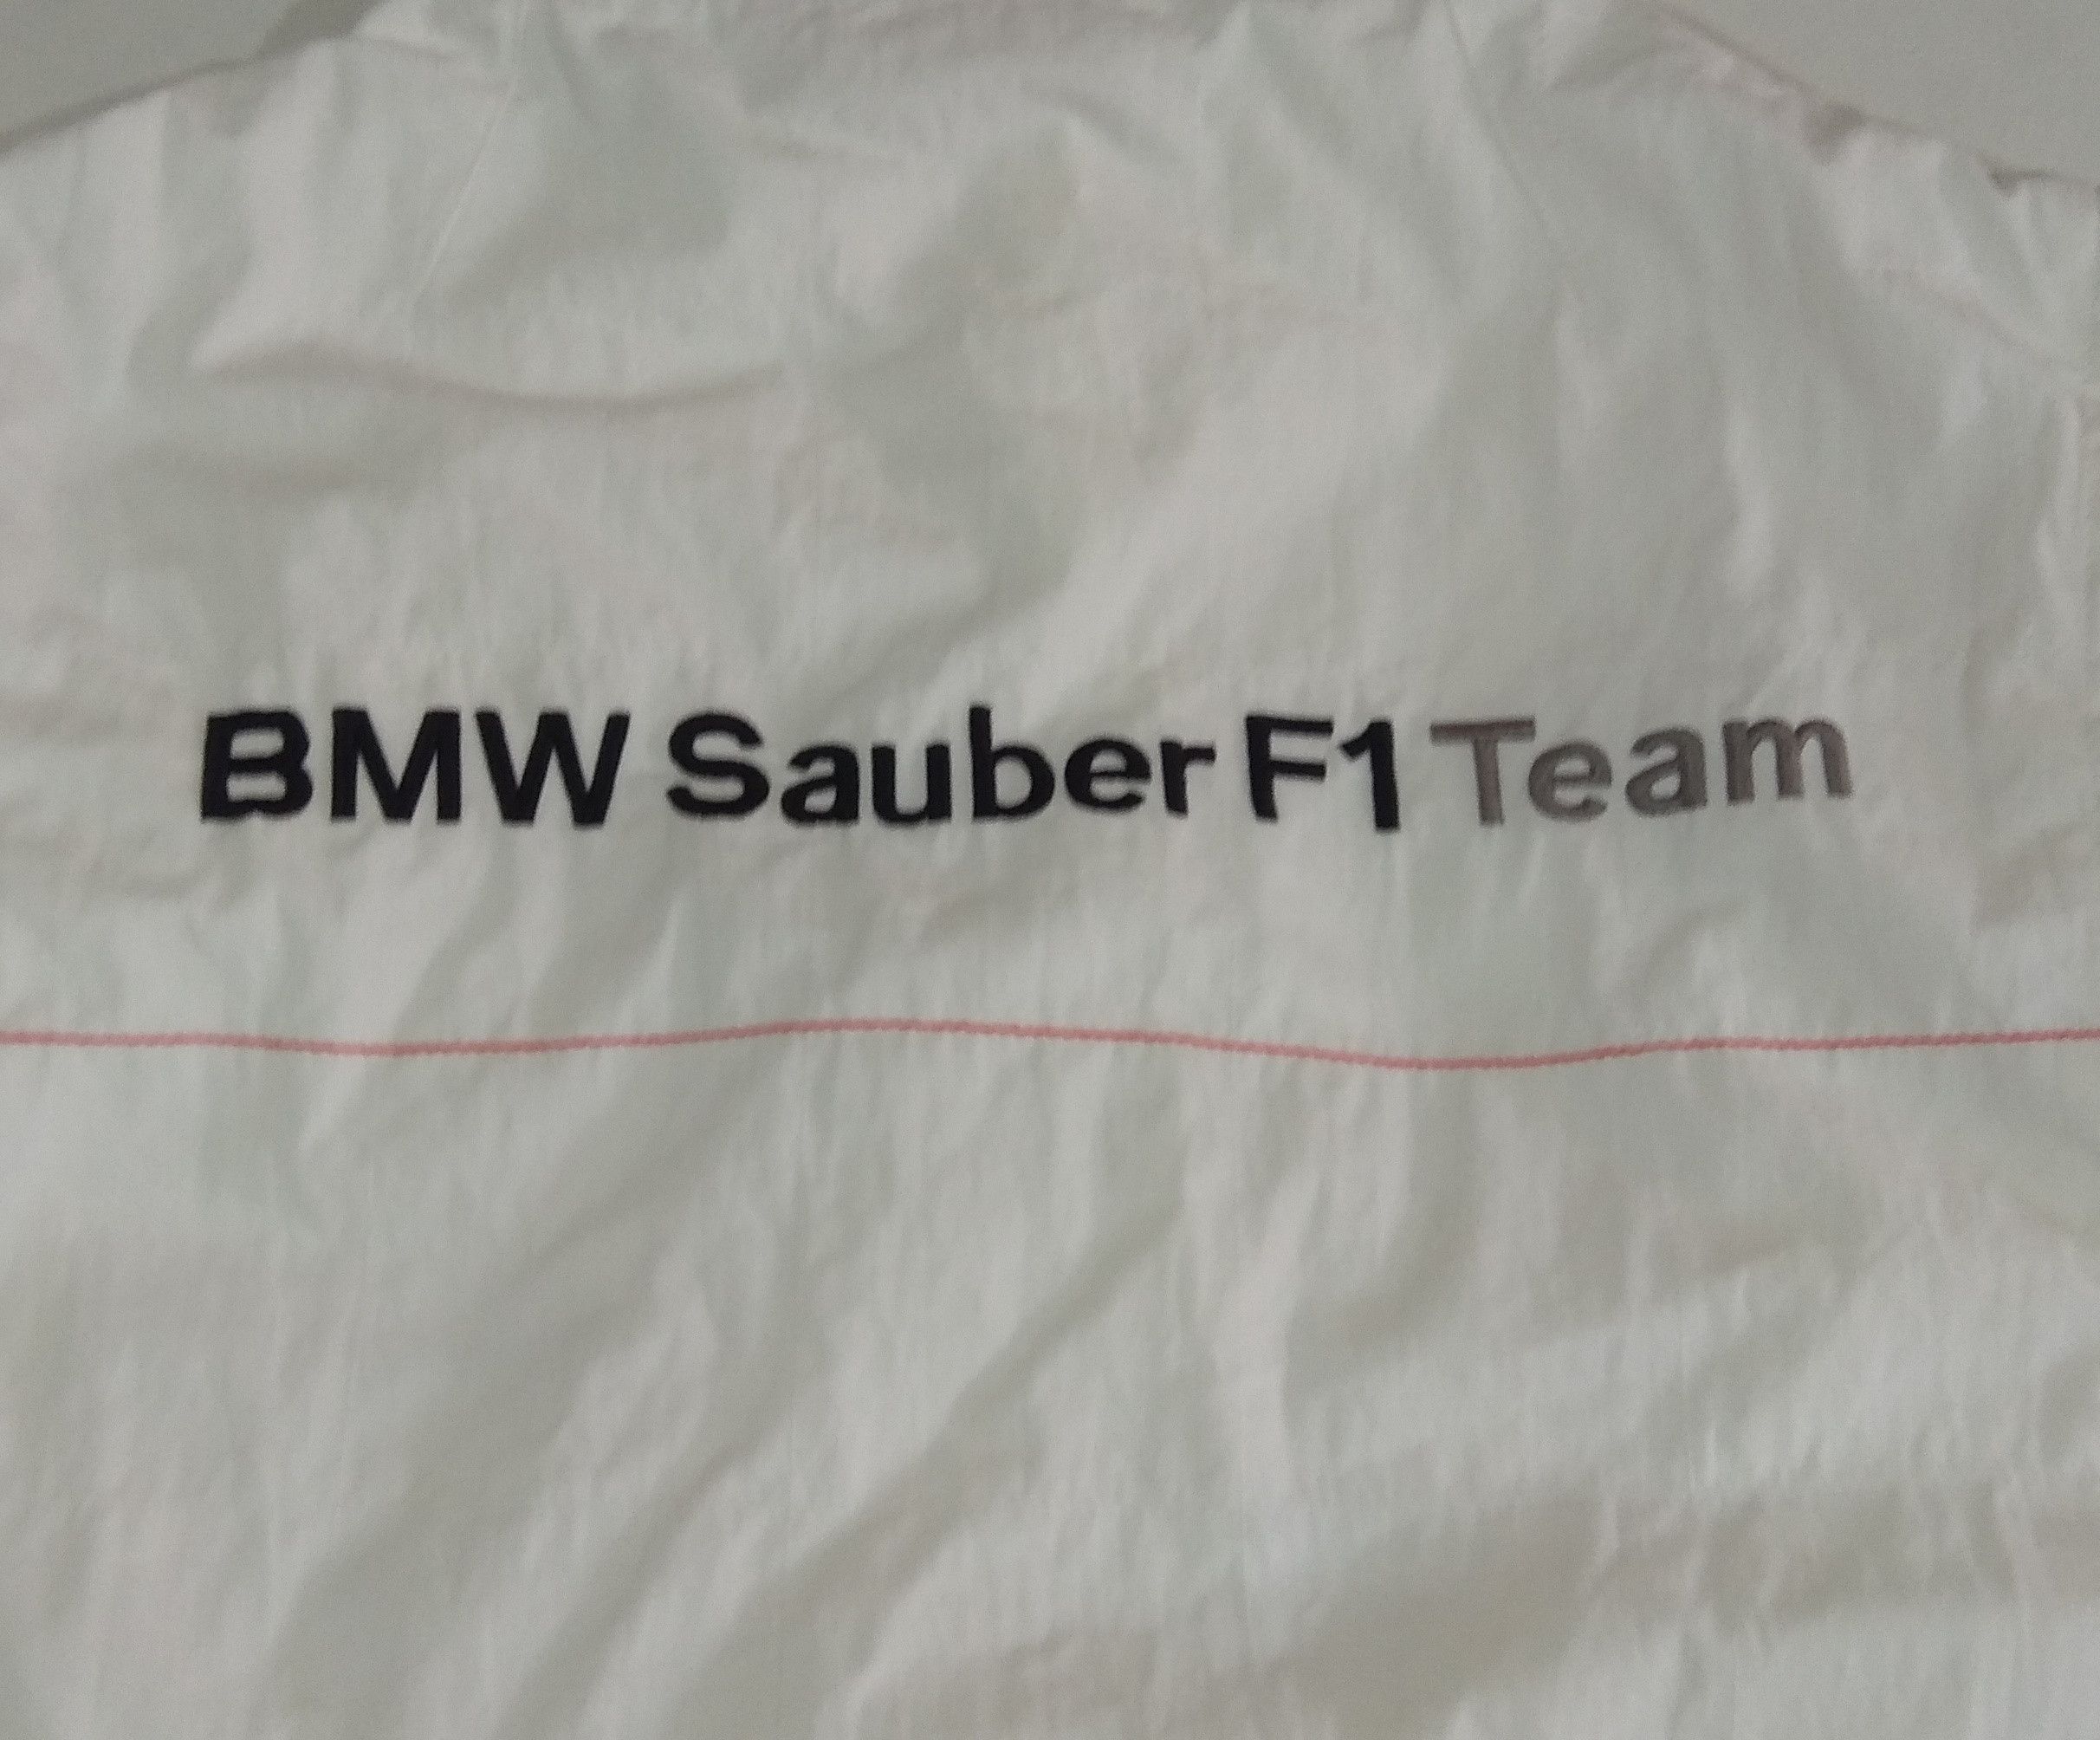 Puma Rare!! BMW Sauber F1 Team Officials Jacket Size US M / EU 48-50 / 2 - 8 Preview